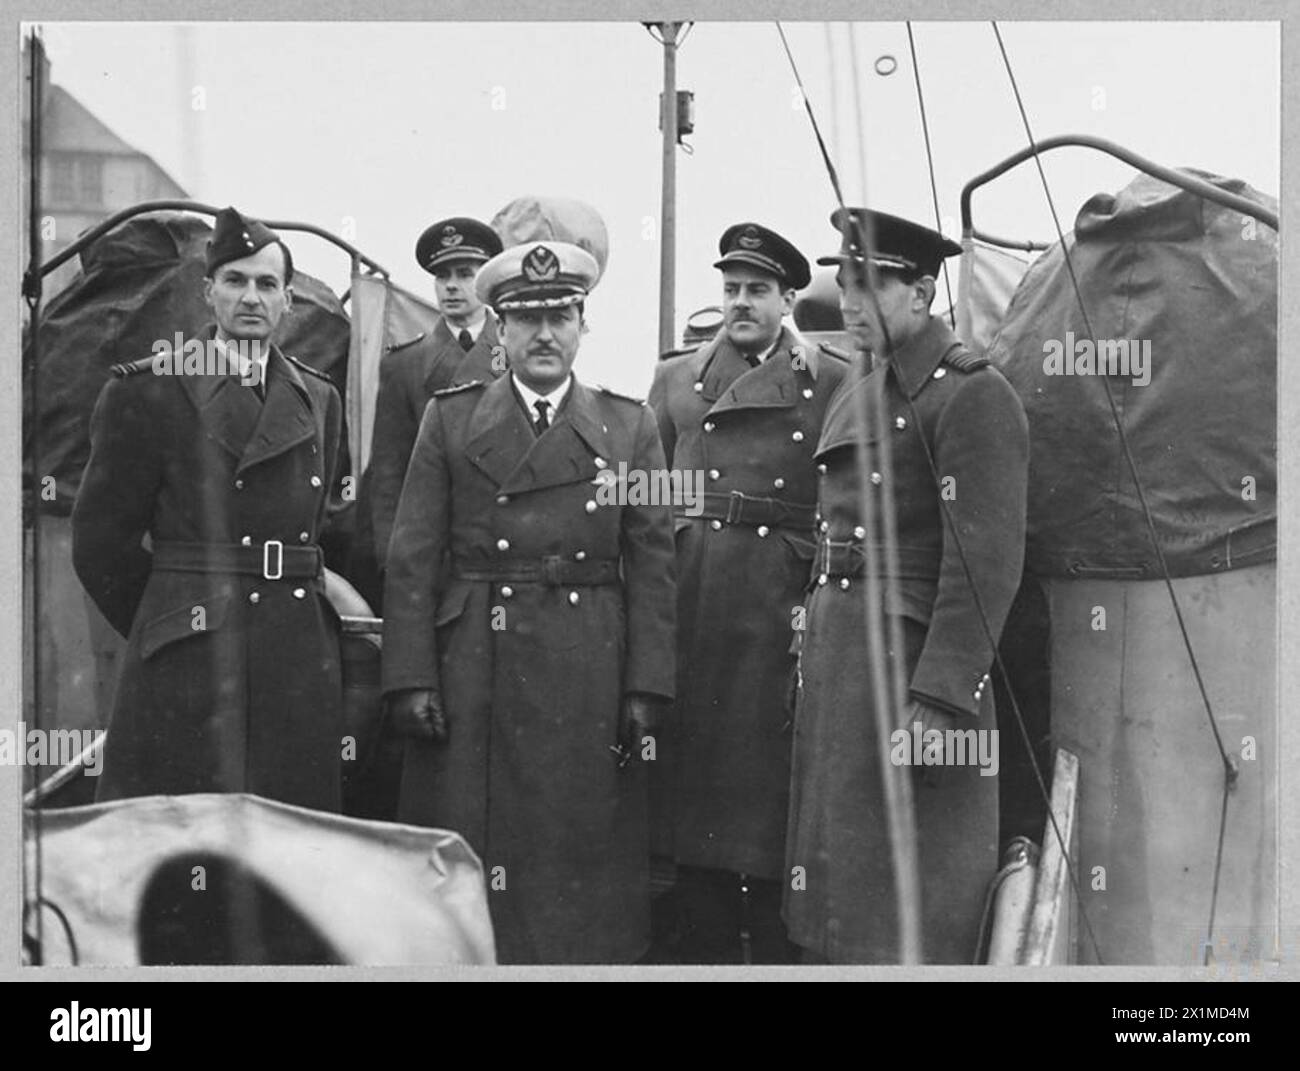 L'ATTACHE AÉRIENNE CHILIENNE VISITE LA STATION R.A.F. EN ÉCOSSE - photo (publiée en 1944) montre - L'attache aérienne chilienne - le commandant d'escadre Marcos Vega [troisième à partir de la droite] inspecte des engins marins du Service de sauvetage aérien/maritime lors d'une visite à une station R.A.F. en Écosse. Également sur la photo se trouvent le Flight Lieutenant Lloyd [à gauche], le Wing commander Barren [deuxième à partir de la droite] et le Group Captain R.L. Wallace, AFC., [à droite], Royal Air Force Banque D'Images